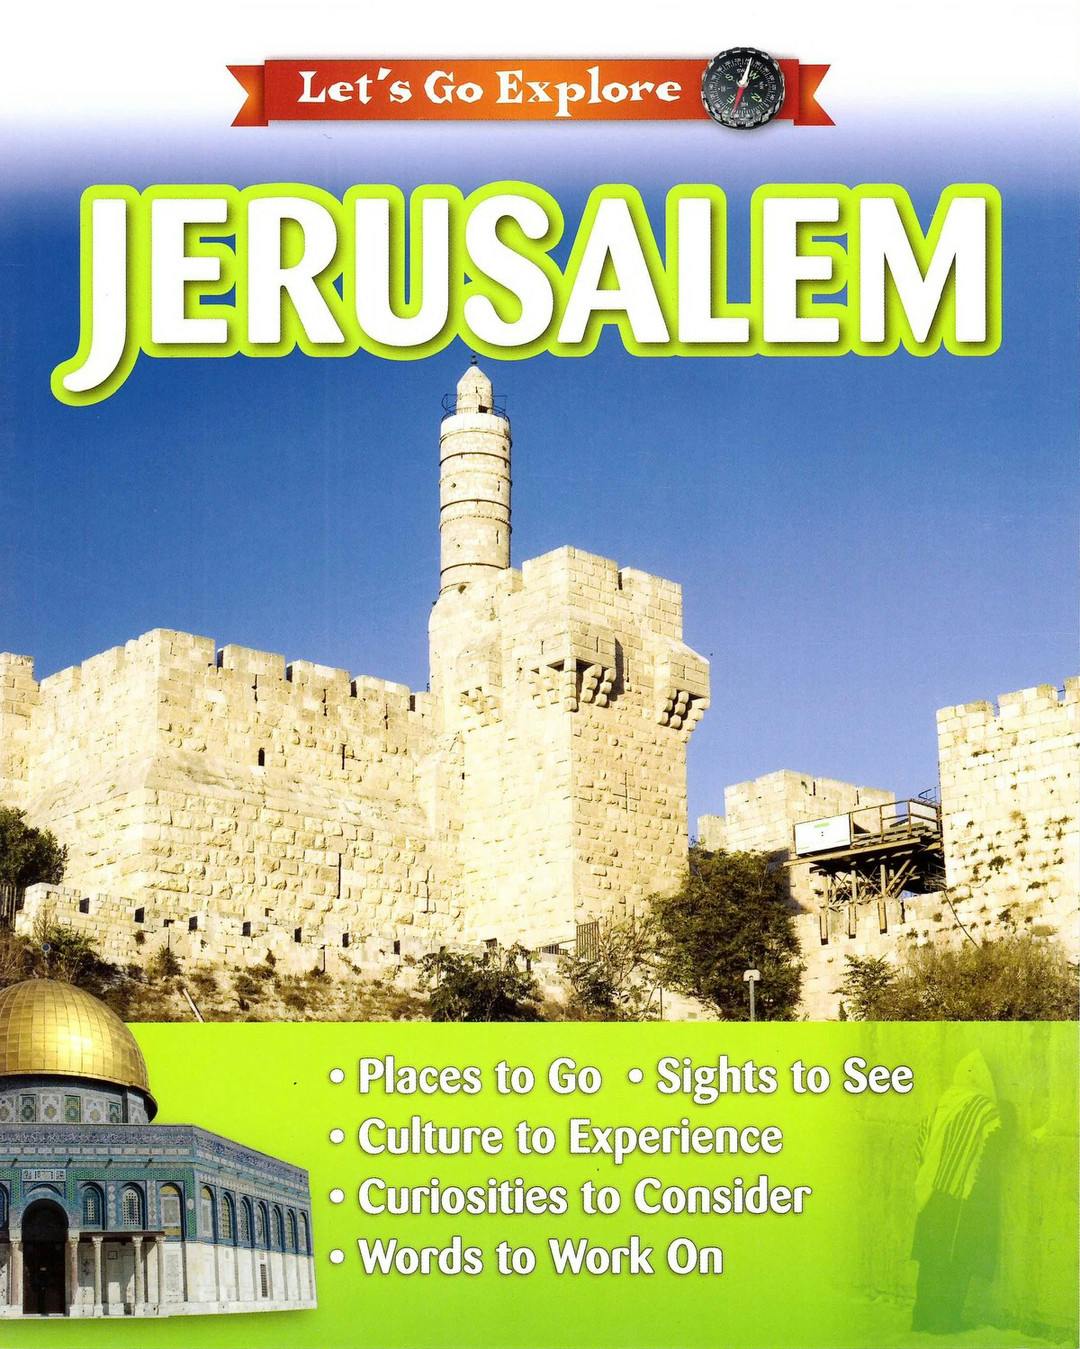 Let's Go Explore Jerusalem